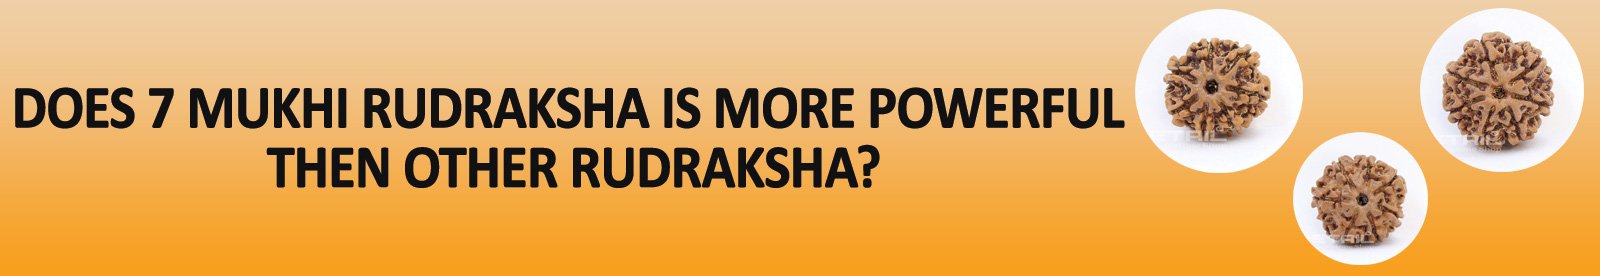 Does 7 Mukhi Rudraksha is more powerful then other Rudraksha?